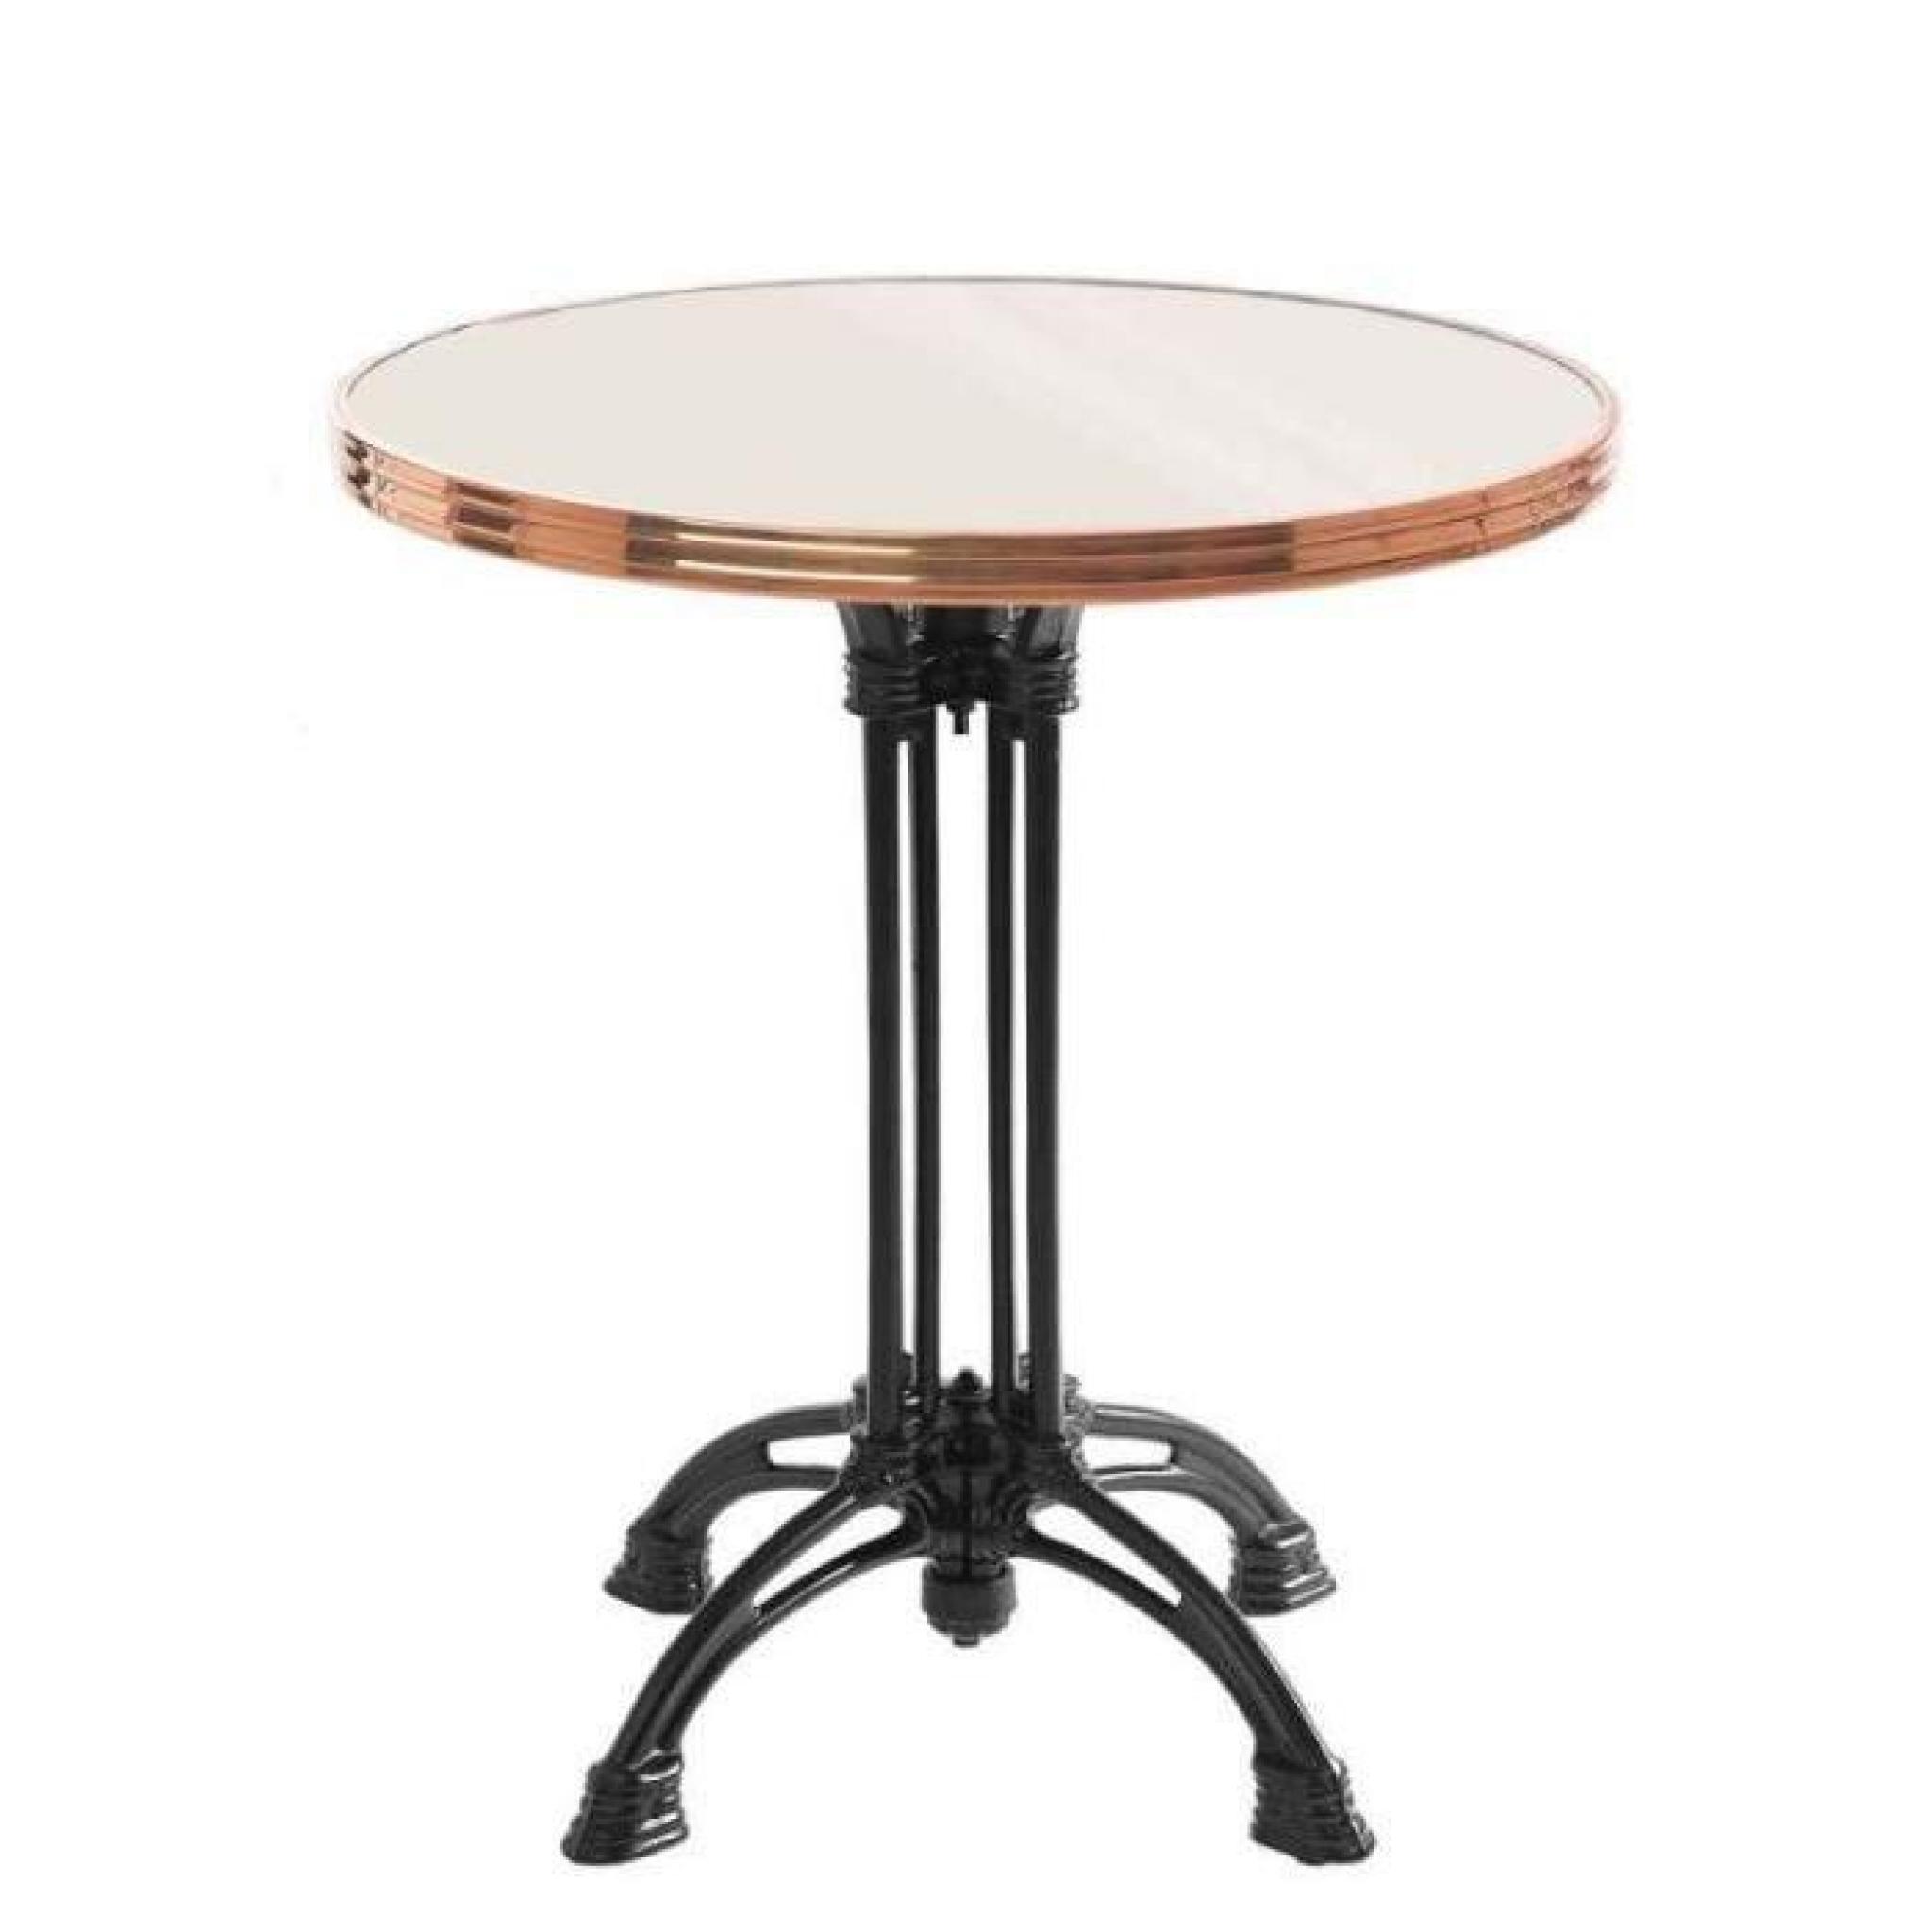 table bistrot ronde couleur ivoire avec cerclage en inox - pied eiffel 4 branches - h70 x d50 cm